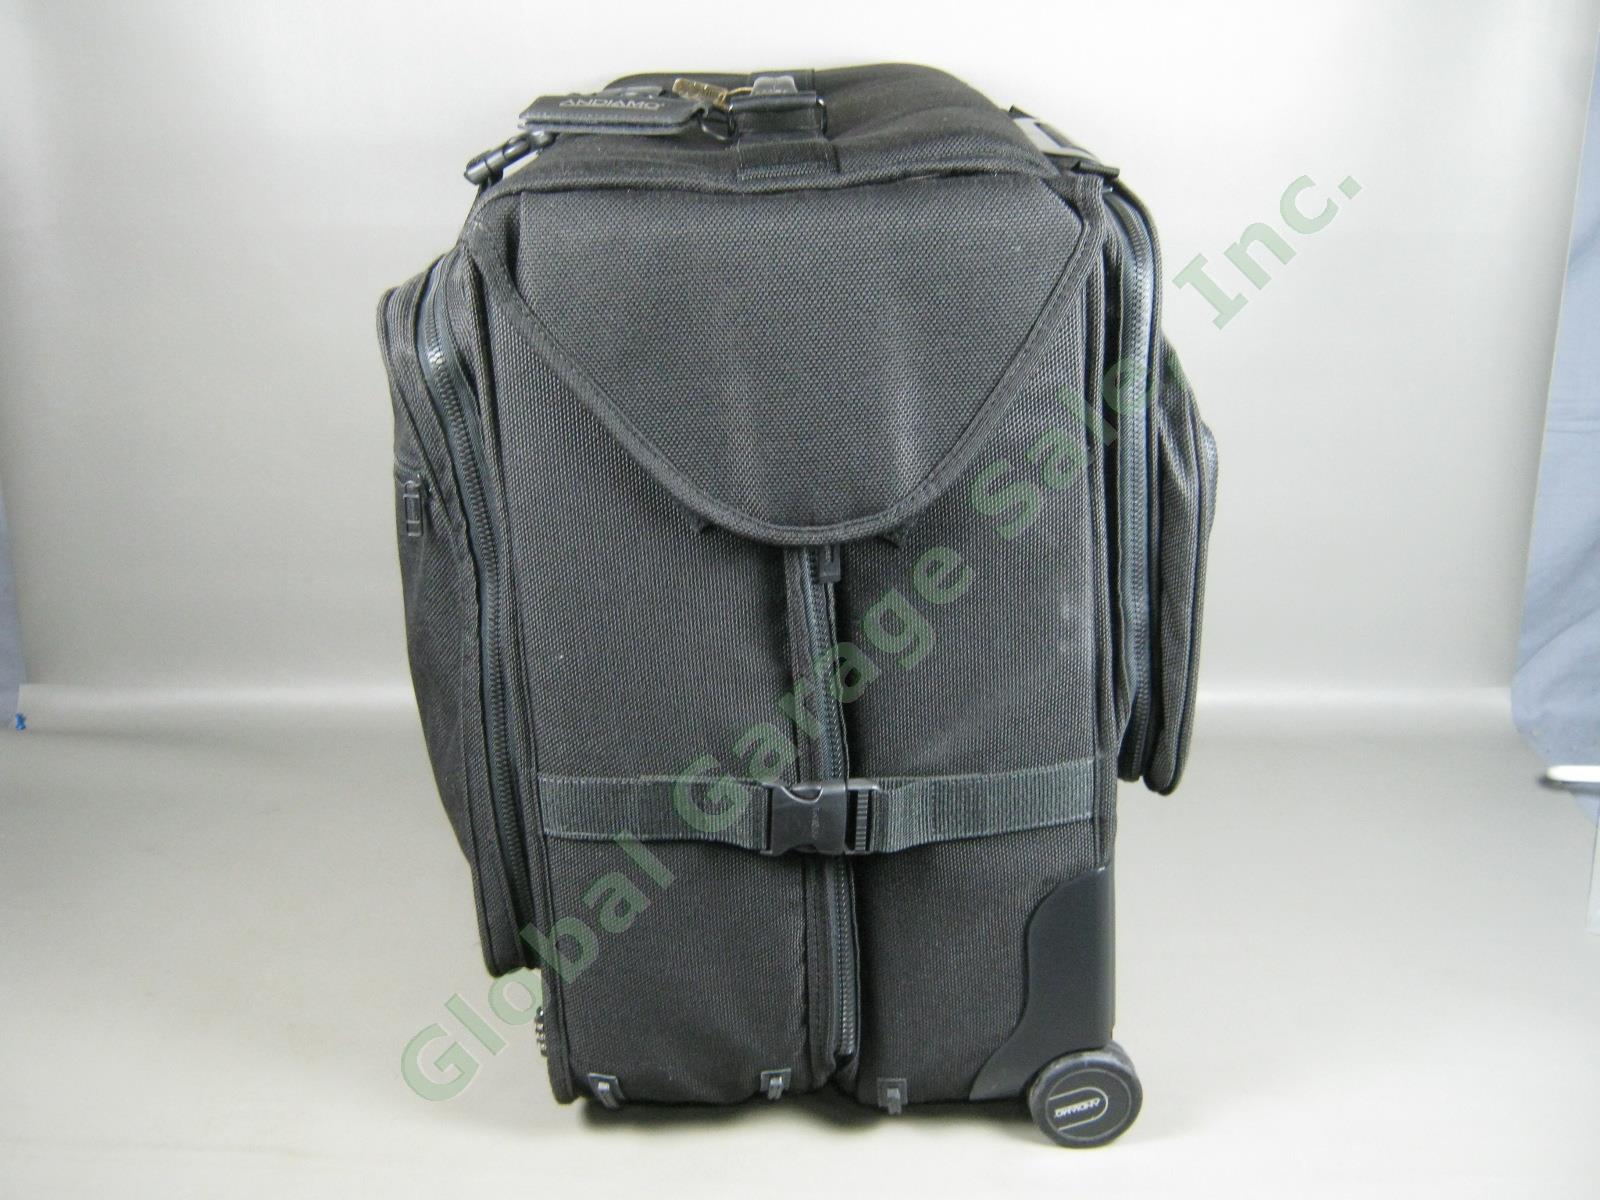 Andiamo Valoroso Wheeled Wardrobe Garment Bag Black Luggage 25x24x16 Exc Cond! 1